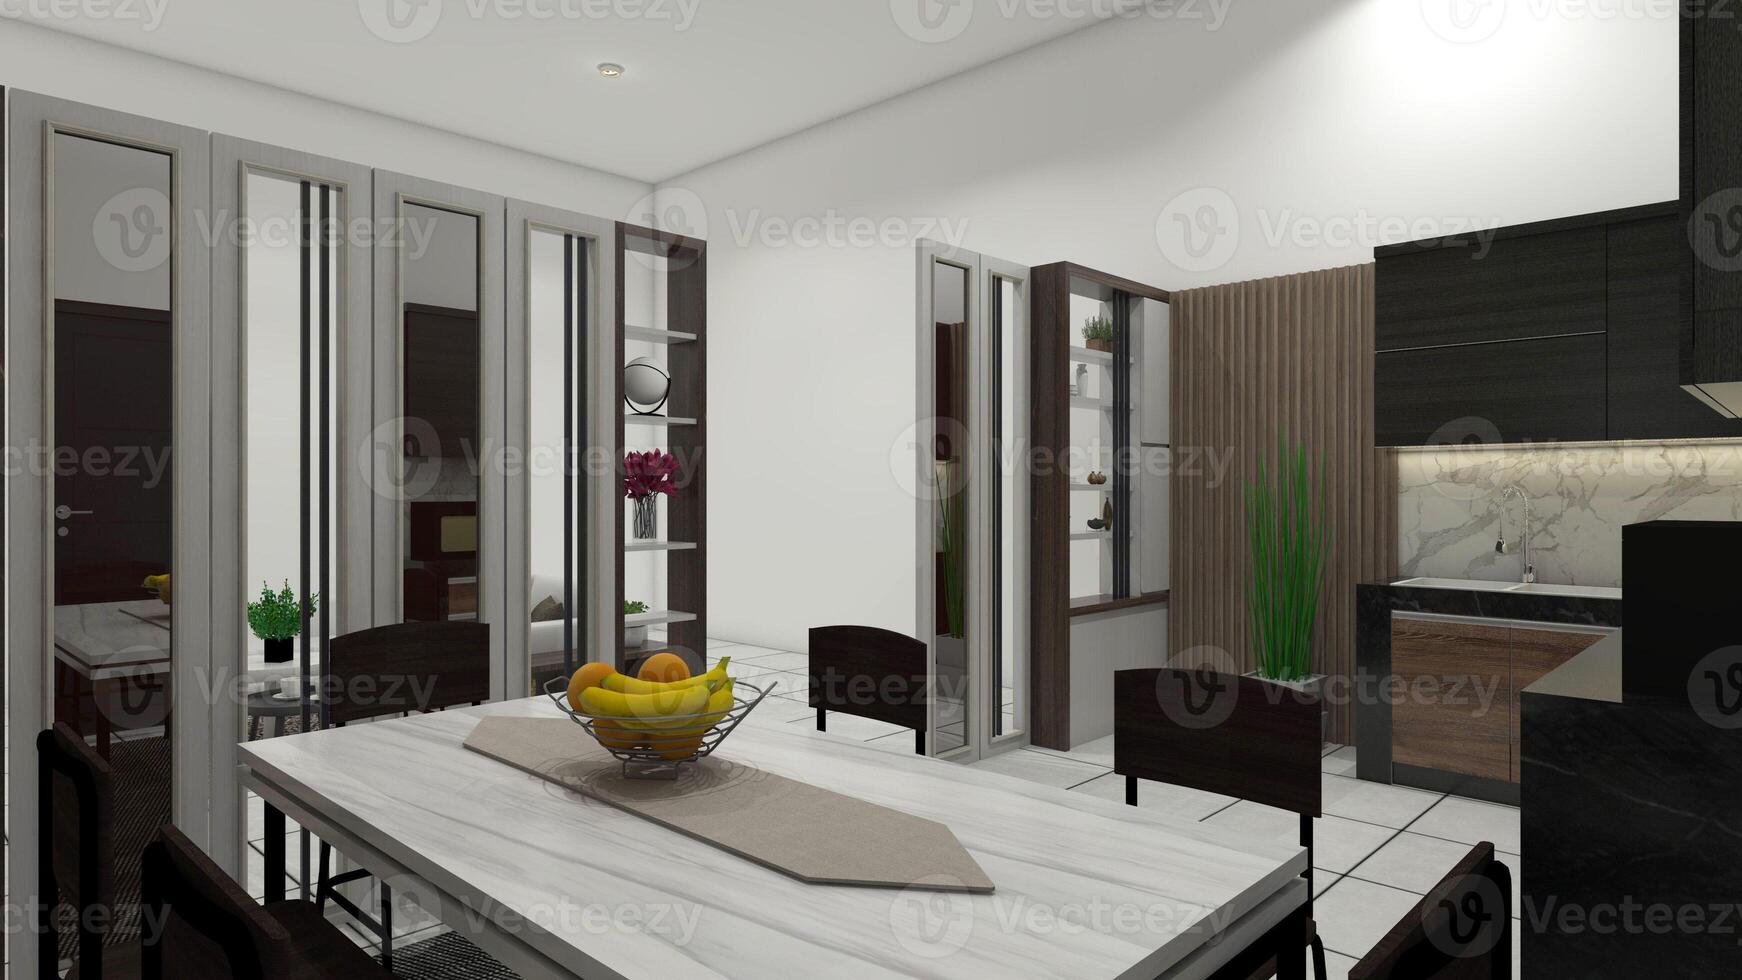 industriell dining rum design med kök område och delare dela, 3d illustration foto